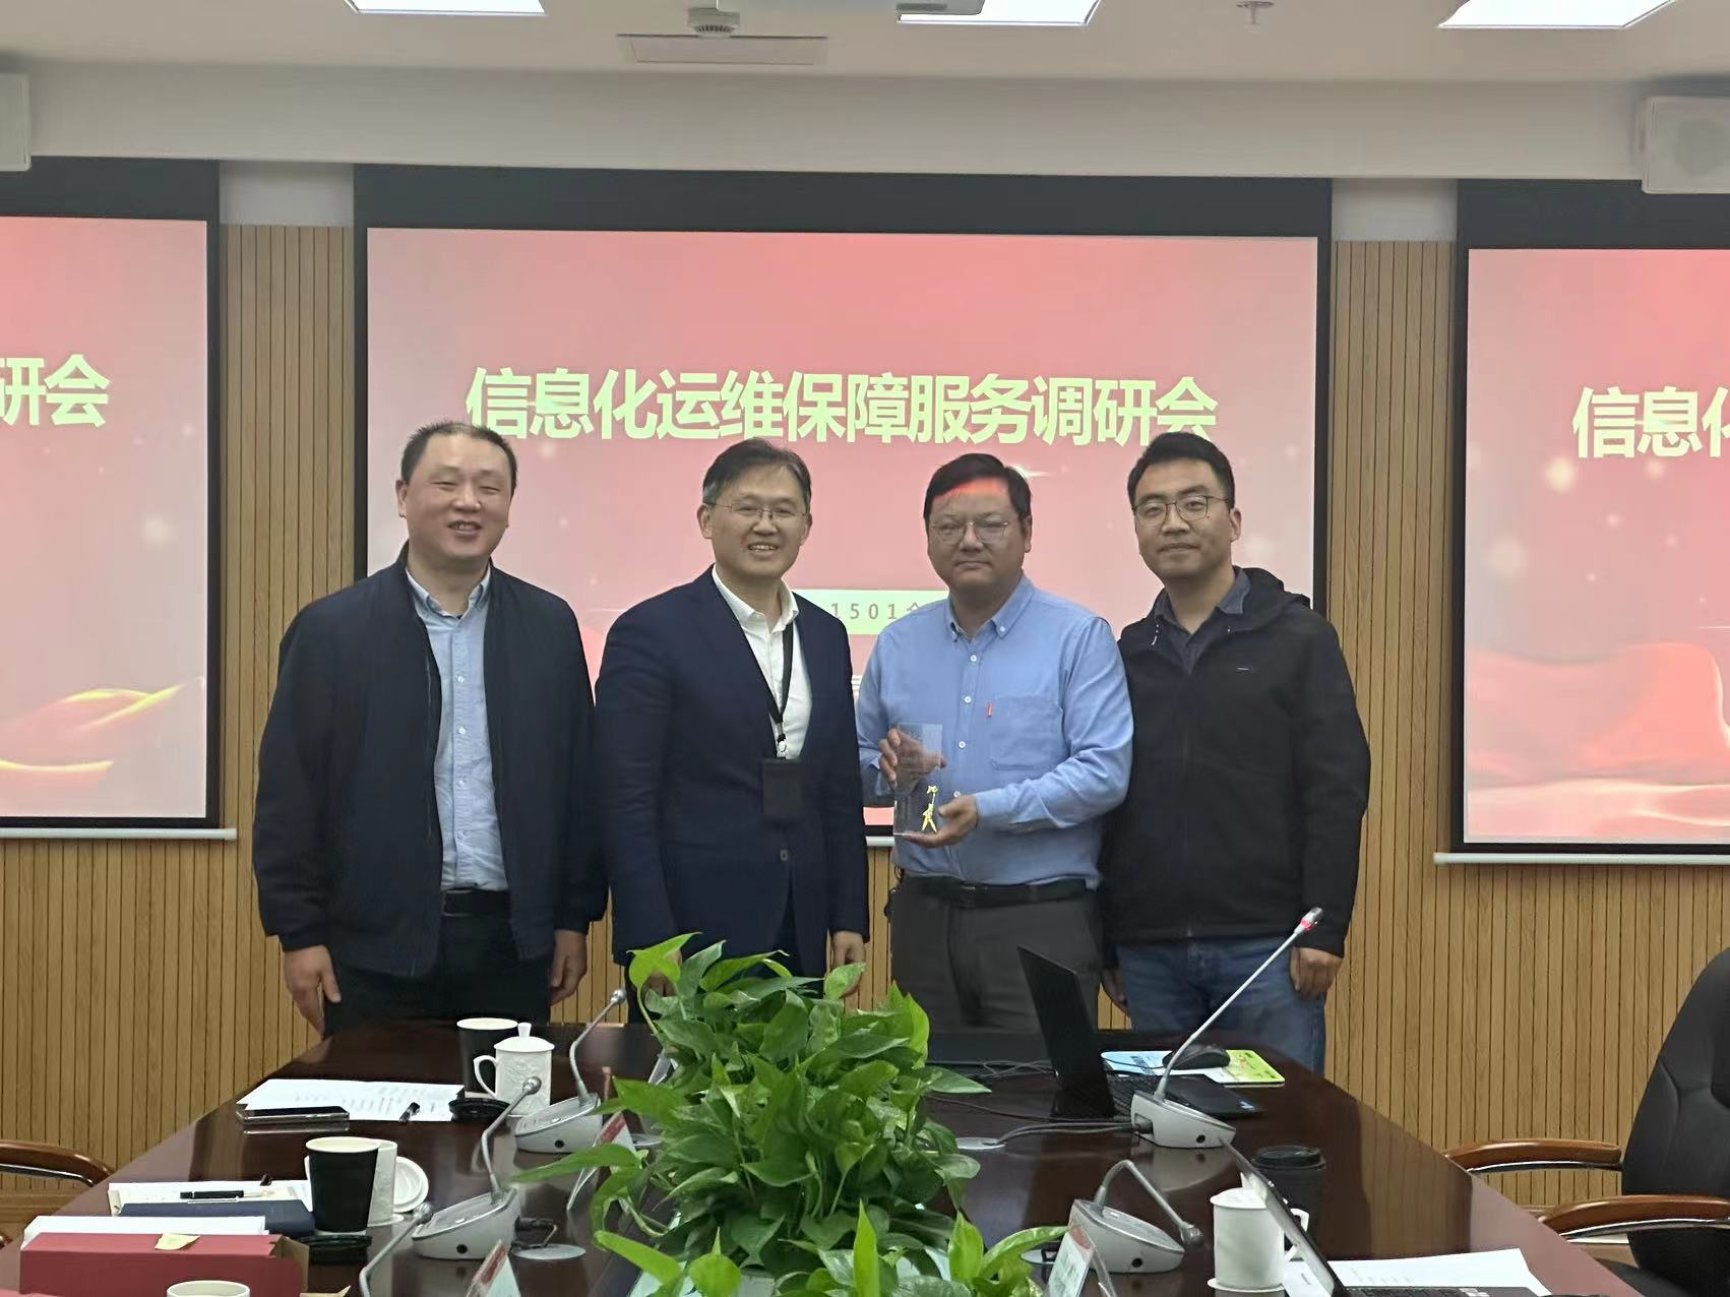 张绍华副校长为运维单位颁发疫情防控工作战略合作伙伴奖杯